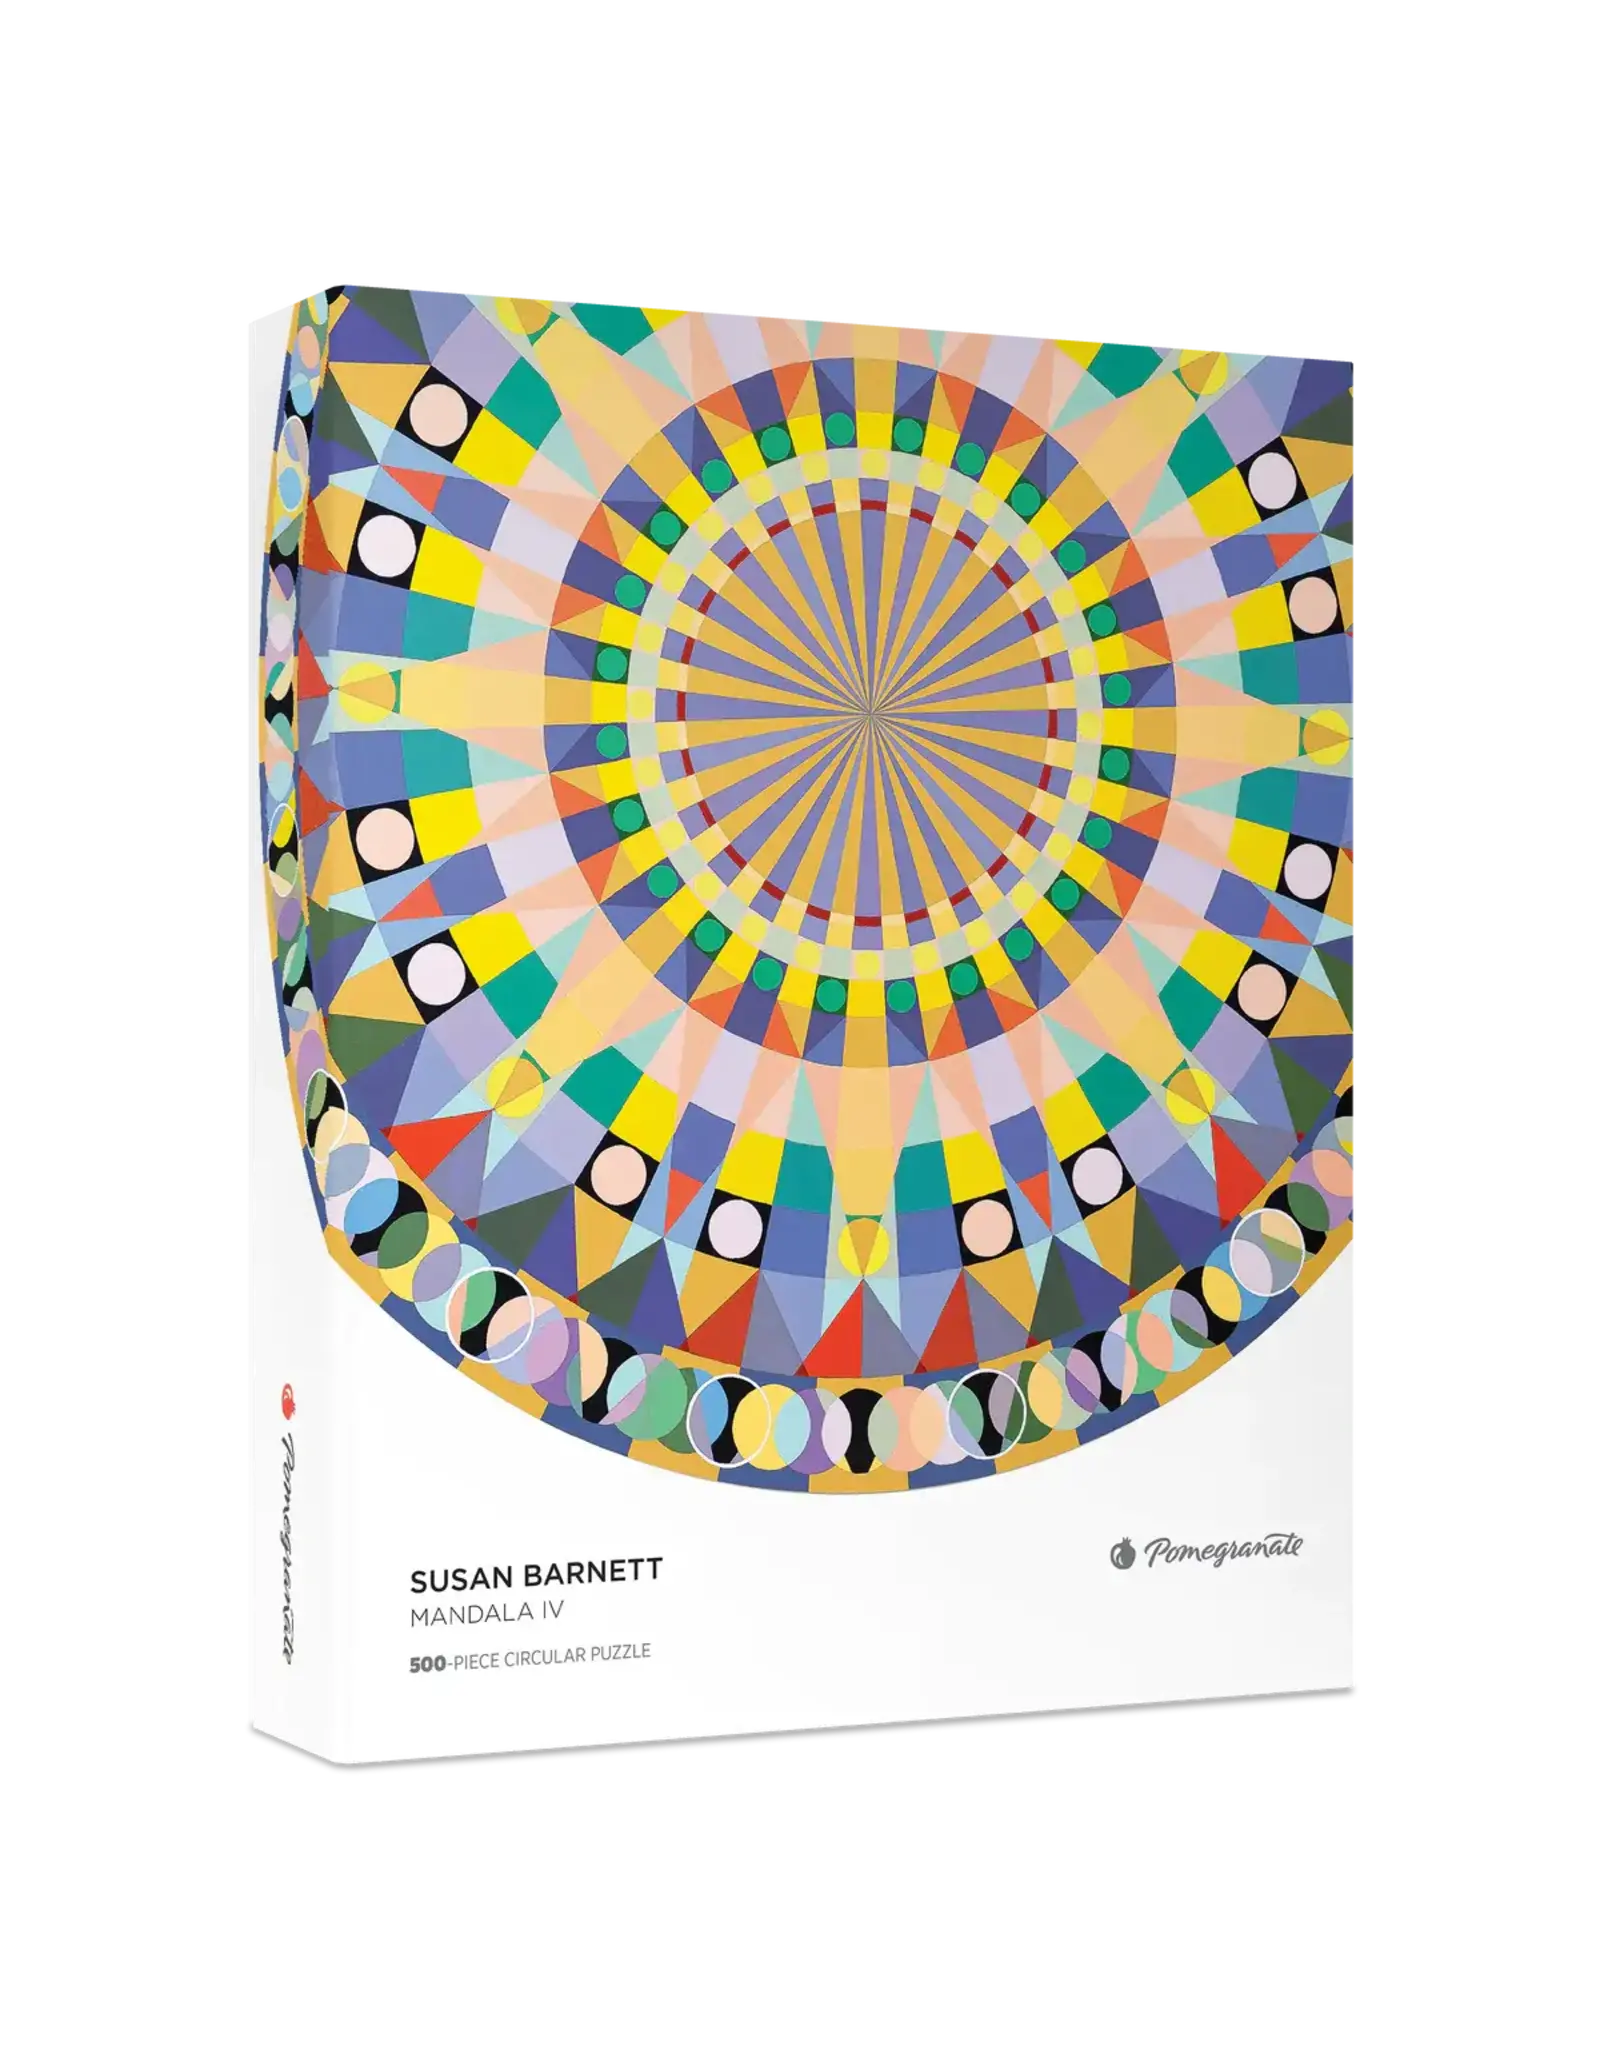 Susan Barnett: Mandala IV 500-Piece Circular Jigsaw Puzzle